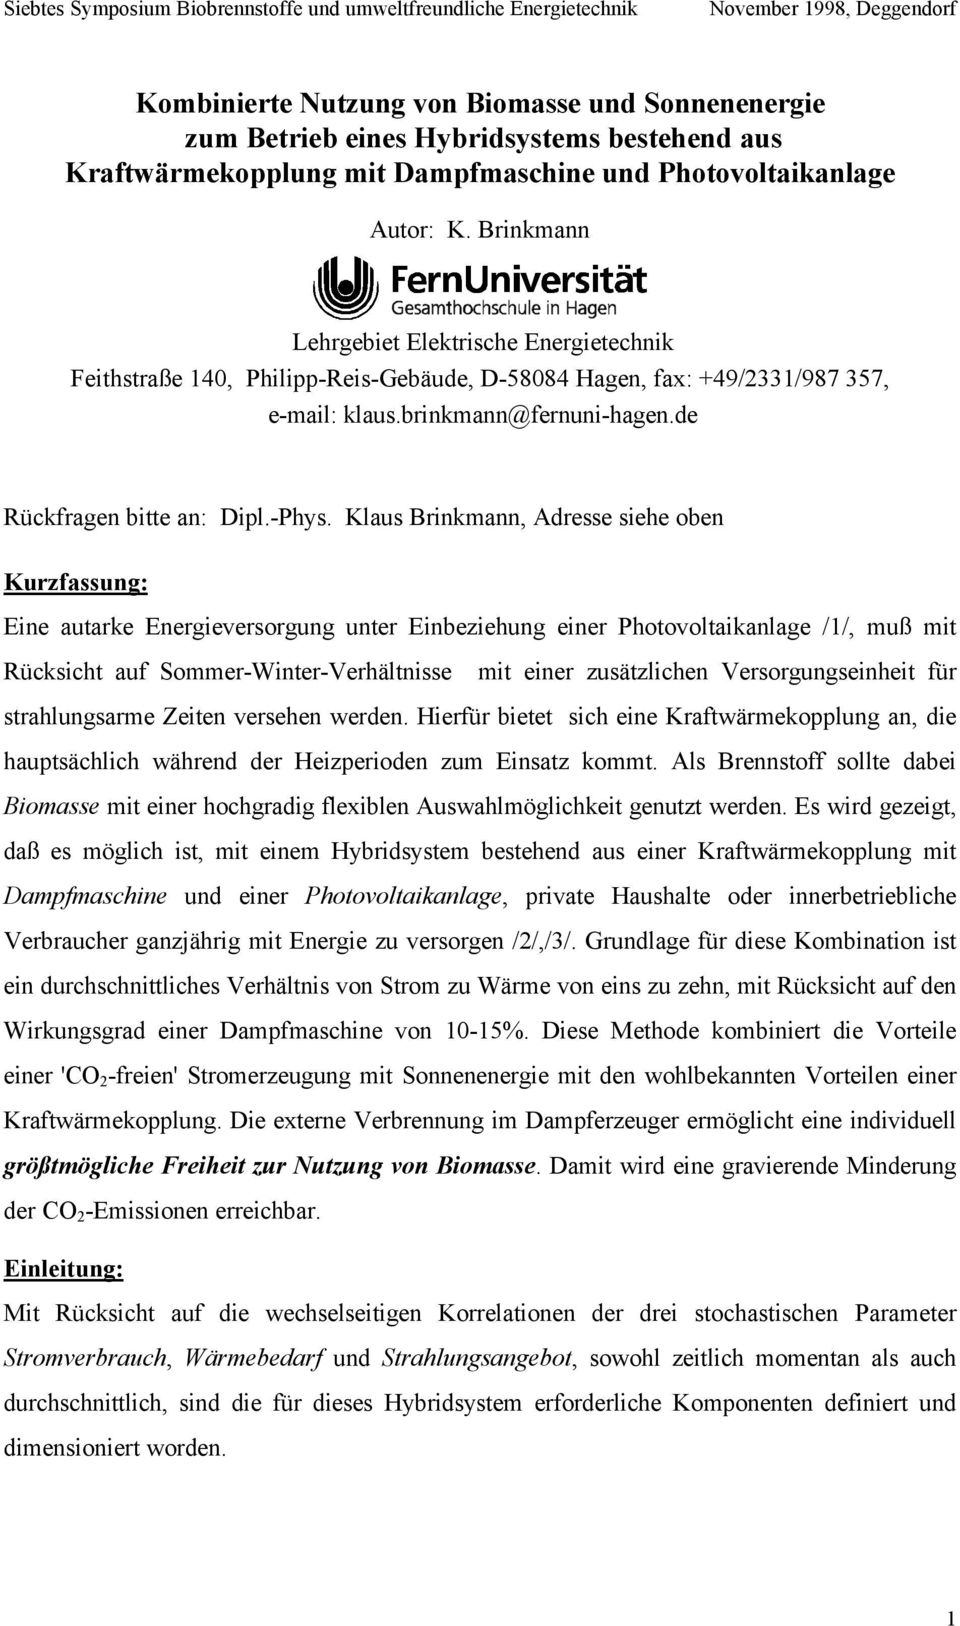 Klaus Brinkmann, Adresse siehe oben Kurzfassung: Eine autarke Energieversorgung unter Einbeziehung einer Photovoltaikanlage /1/, muß mit Rücksicht auf Sommer-Winter-Verhältnisse mit einer